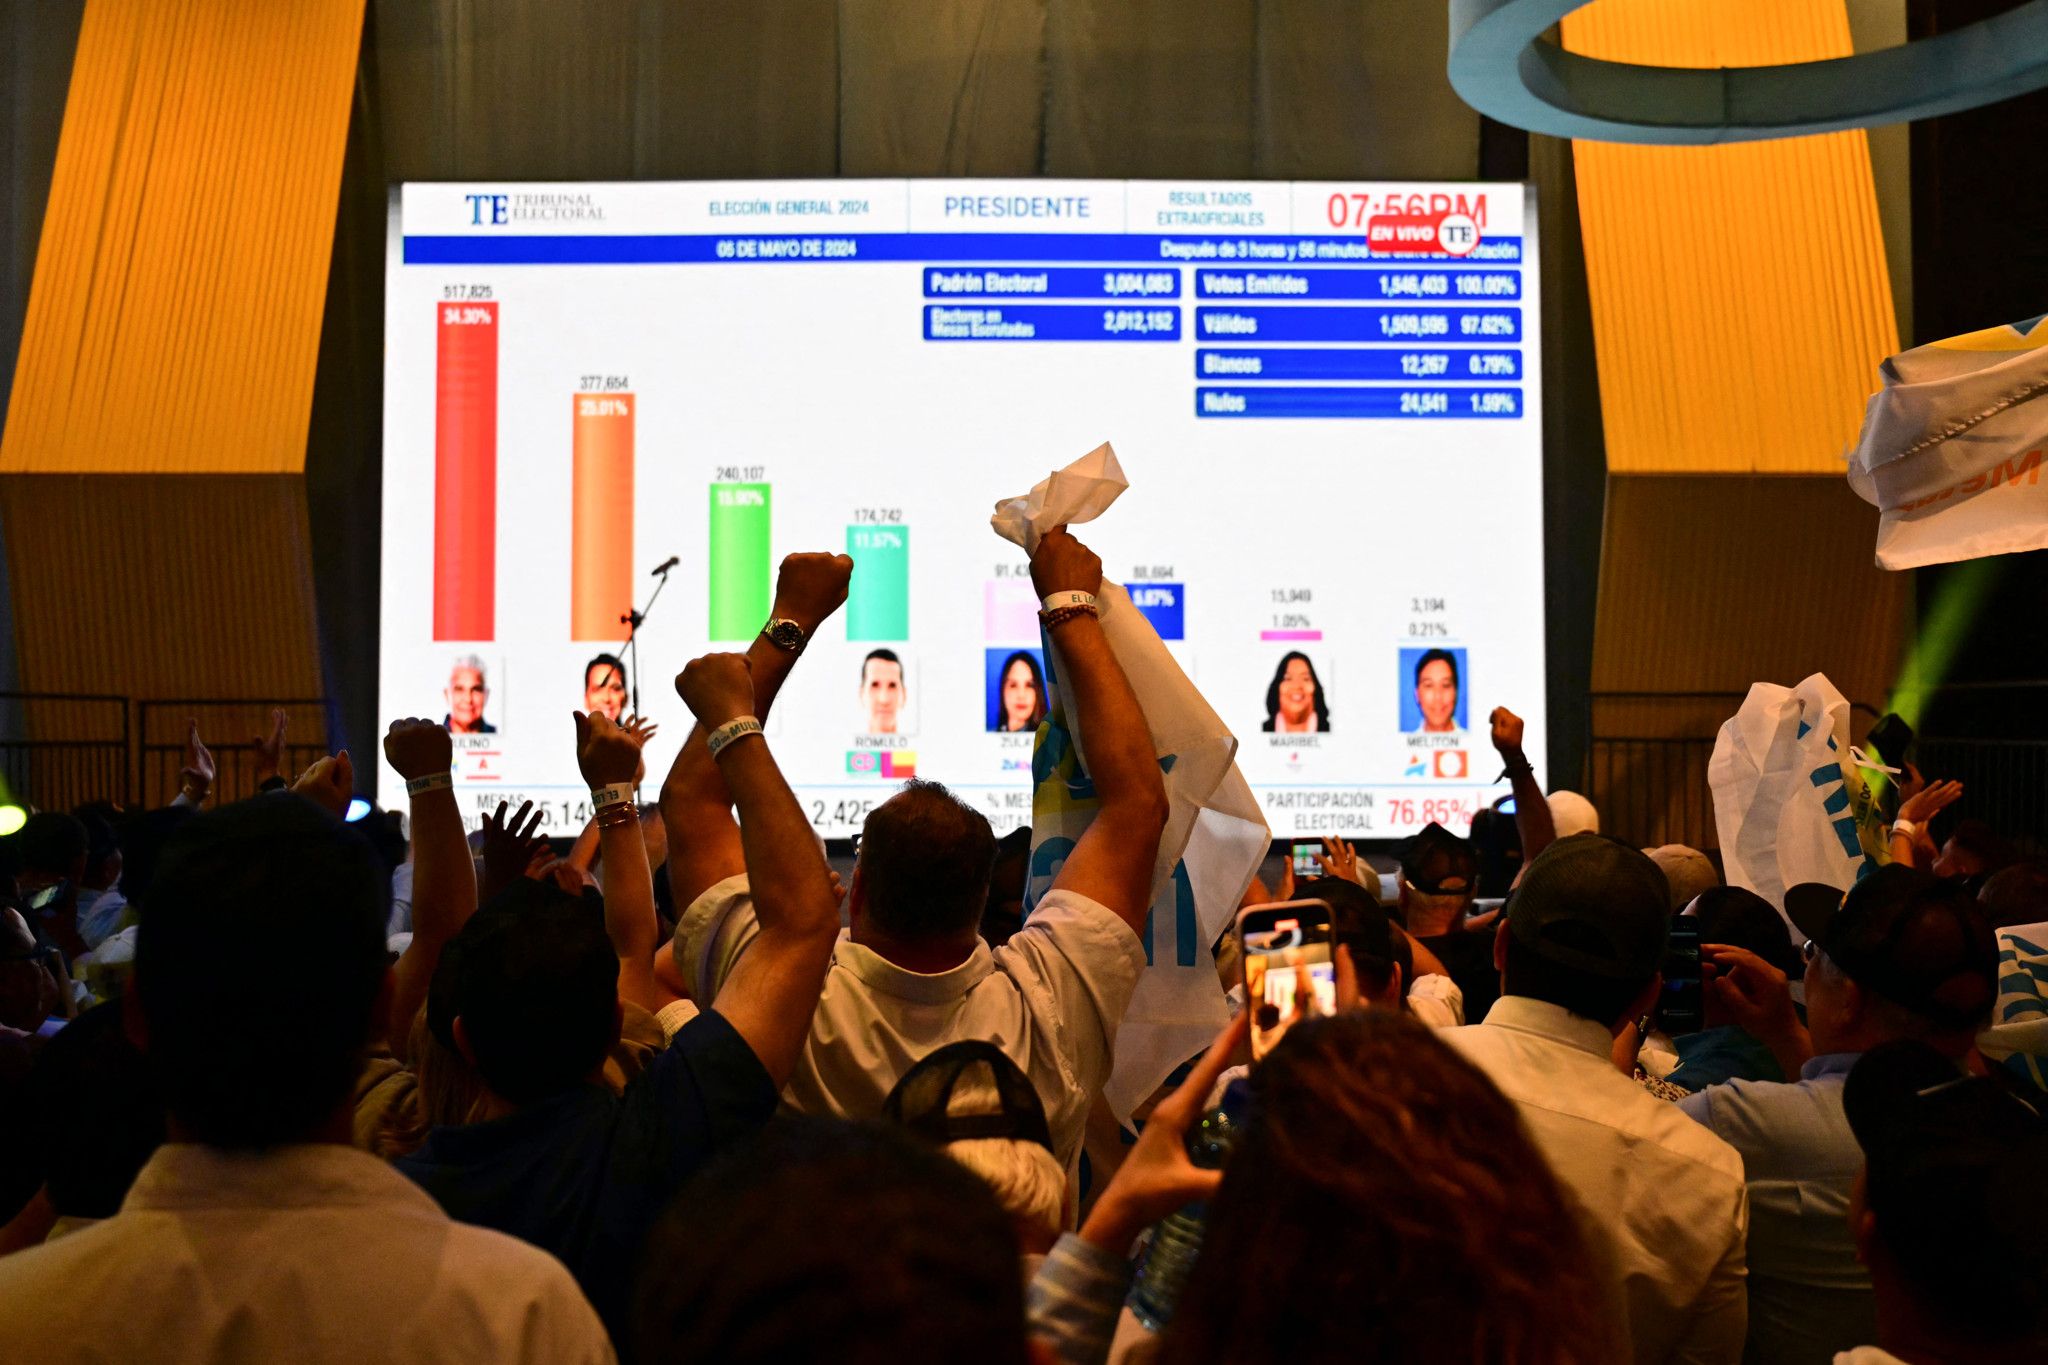 José Raul Mulino remporte la présidentielle au Panama